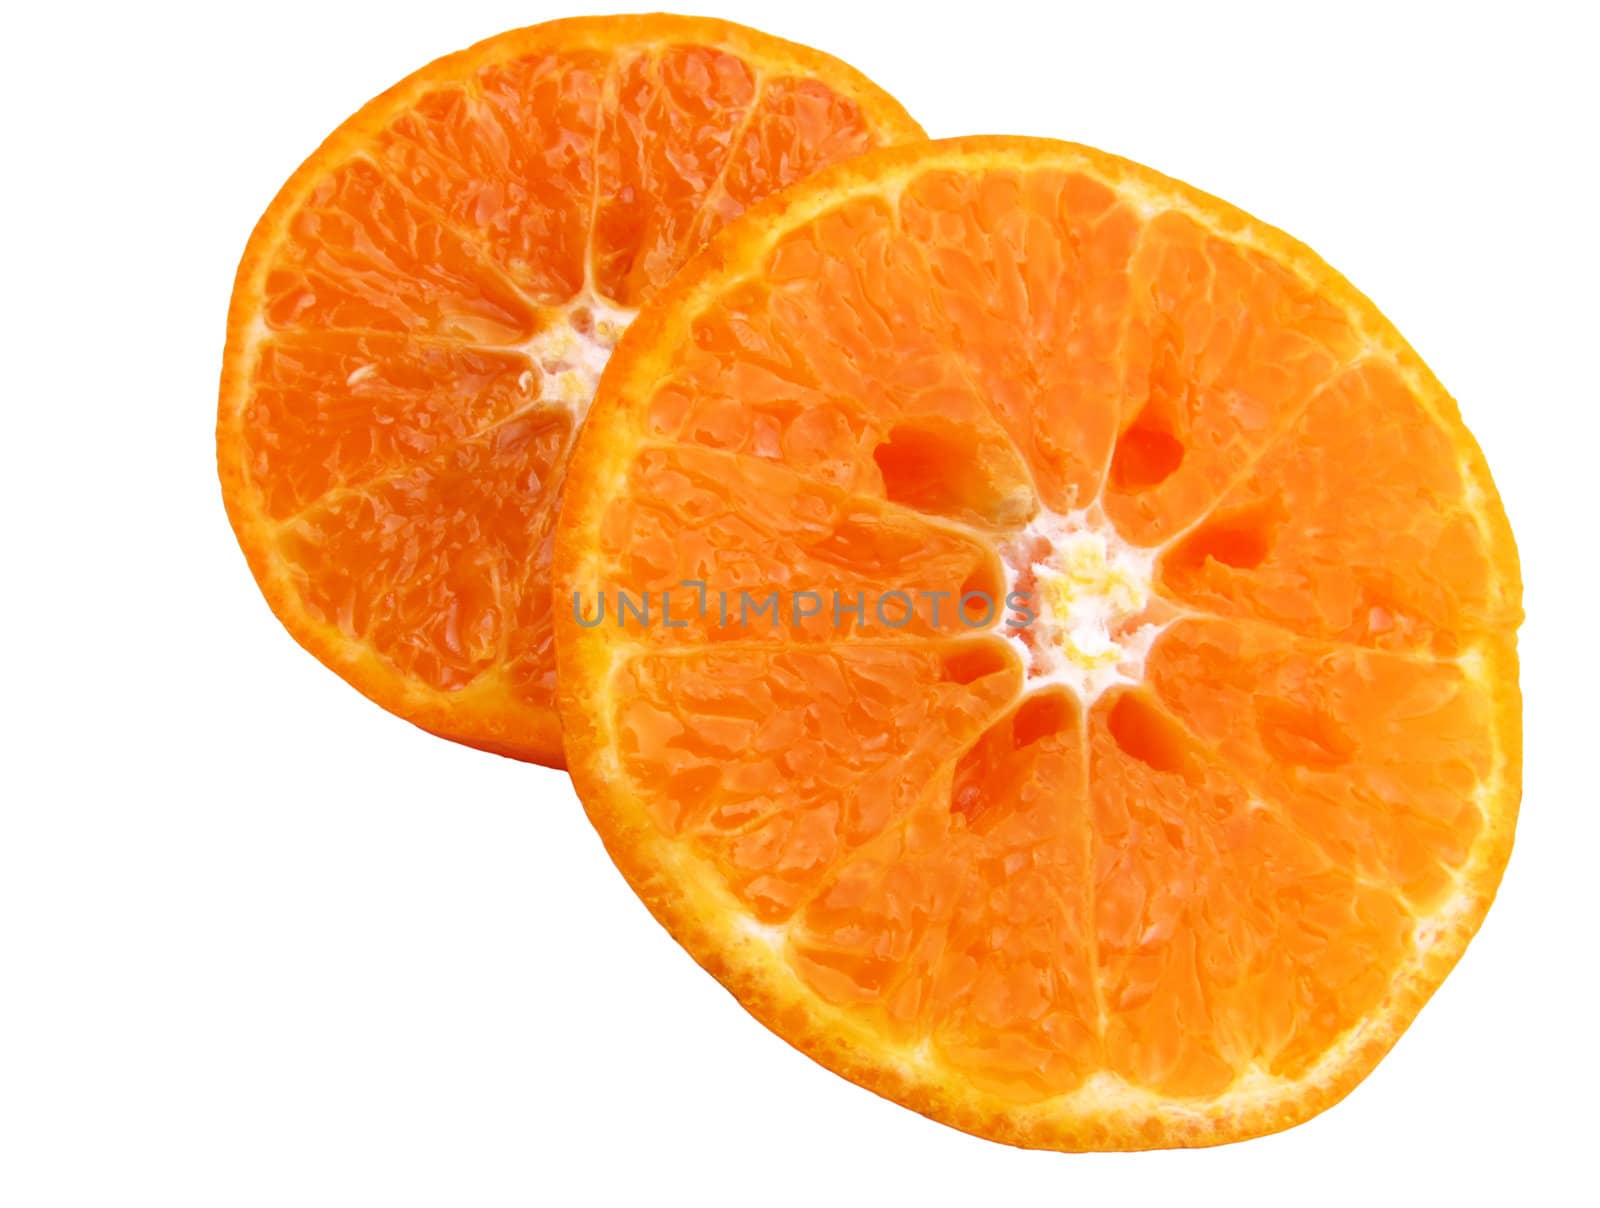 Image of sliced juicy orange isolated on white background